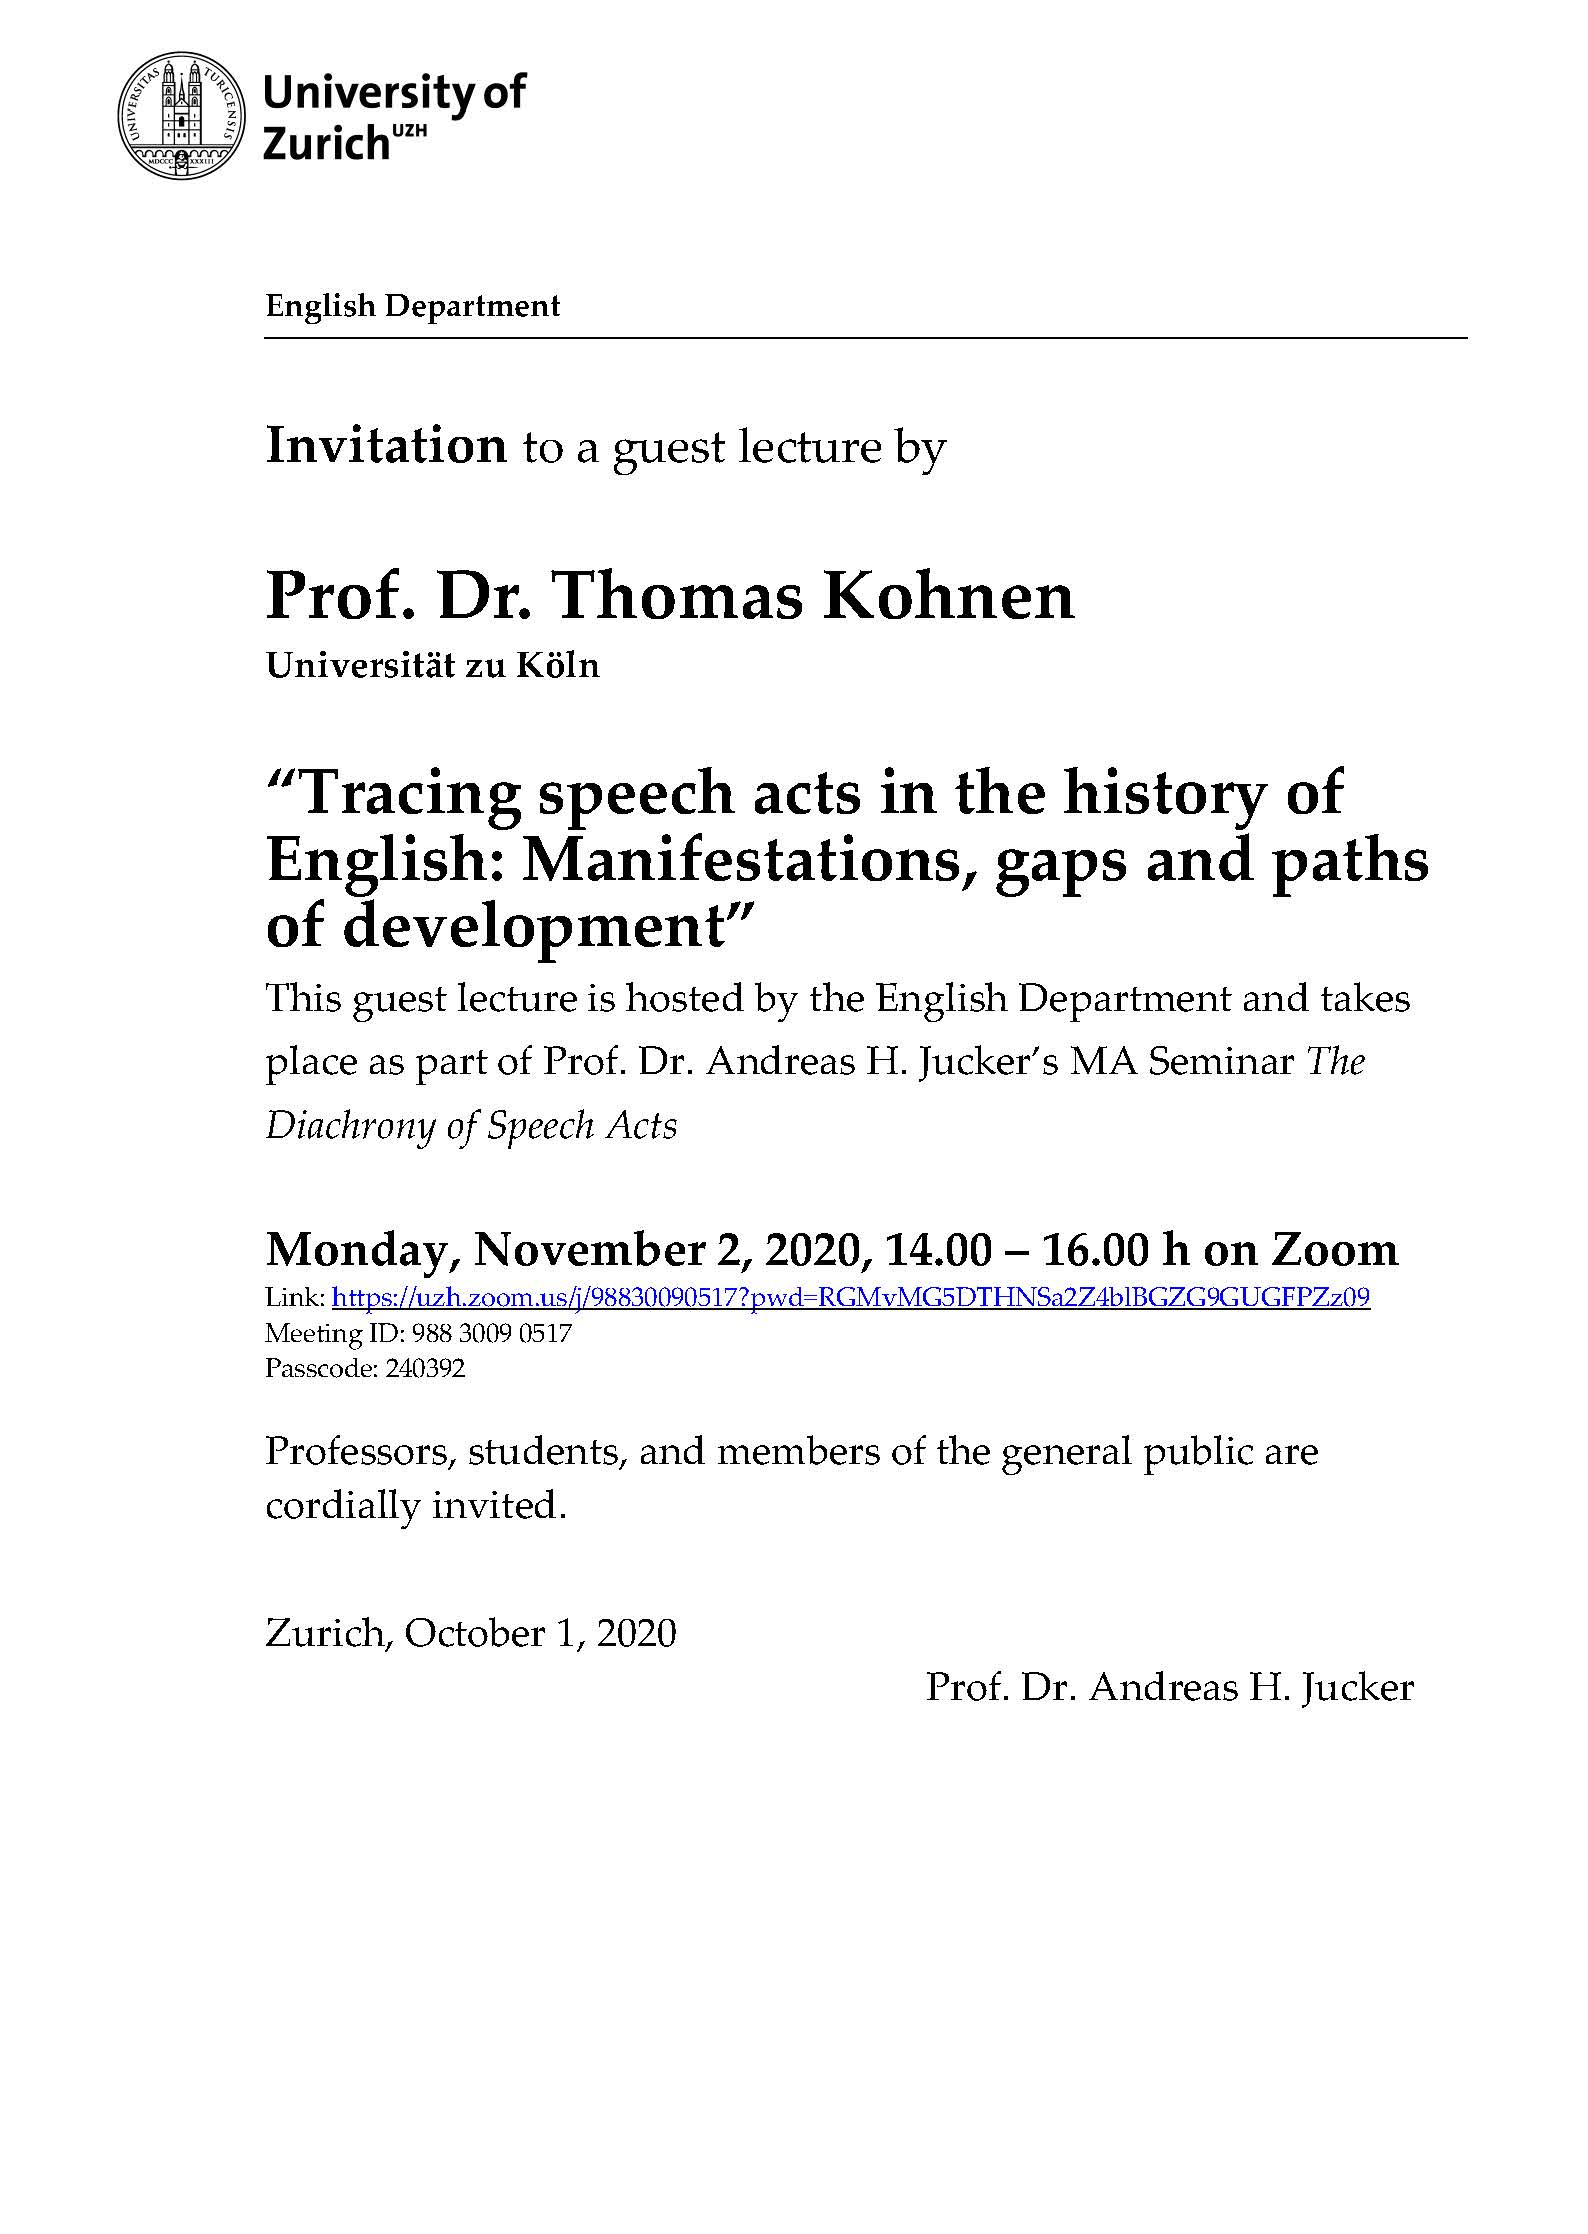 Guest Lecture Prof. Dr. Thomas Kohnen (Universität zu Köln)